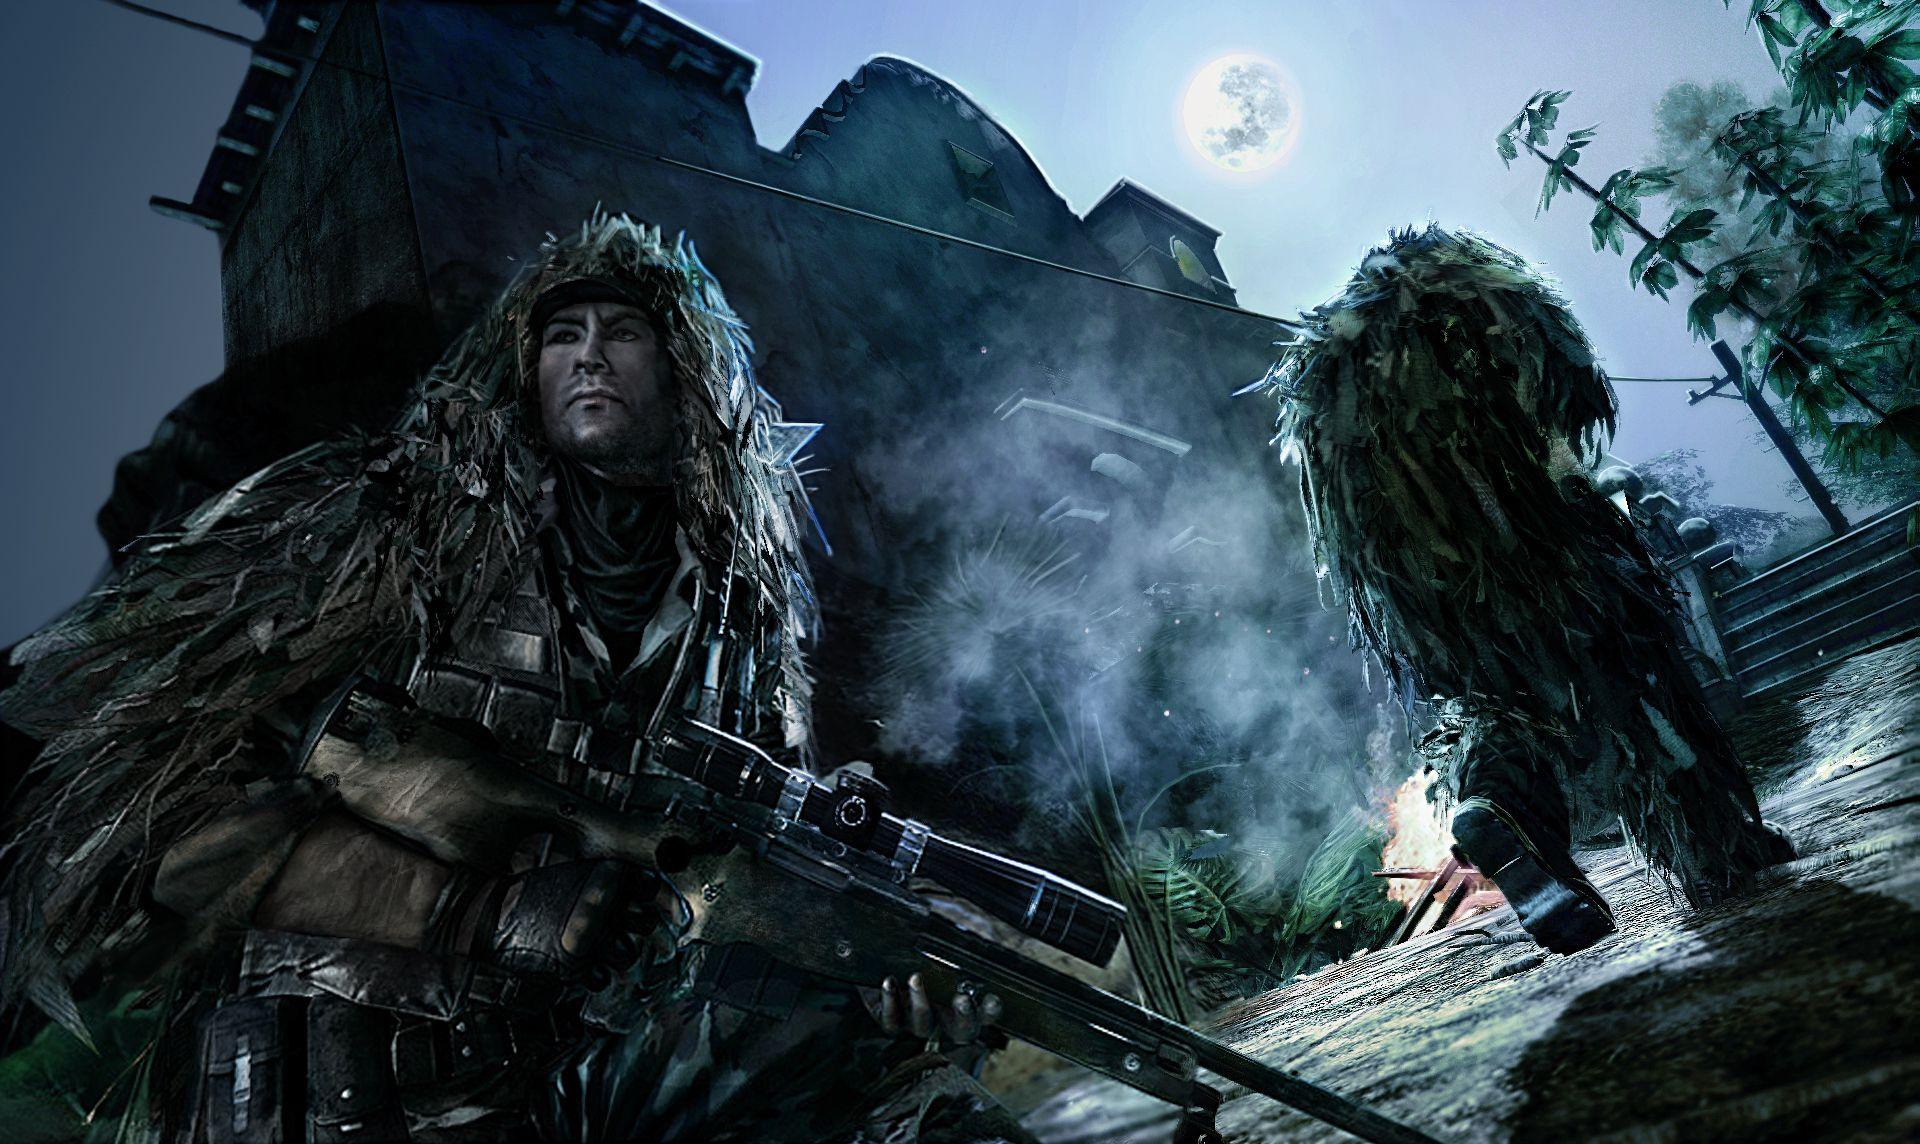 Sniper Ghost Warrior Wallpaper GameHDWall.com Video Games